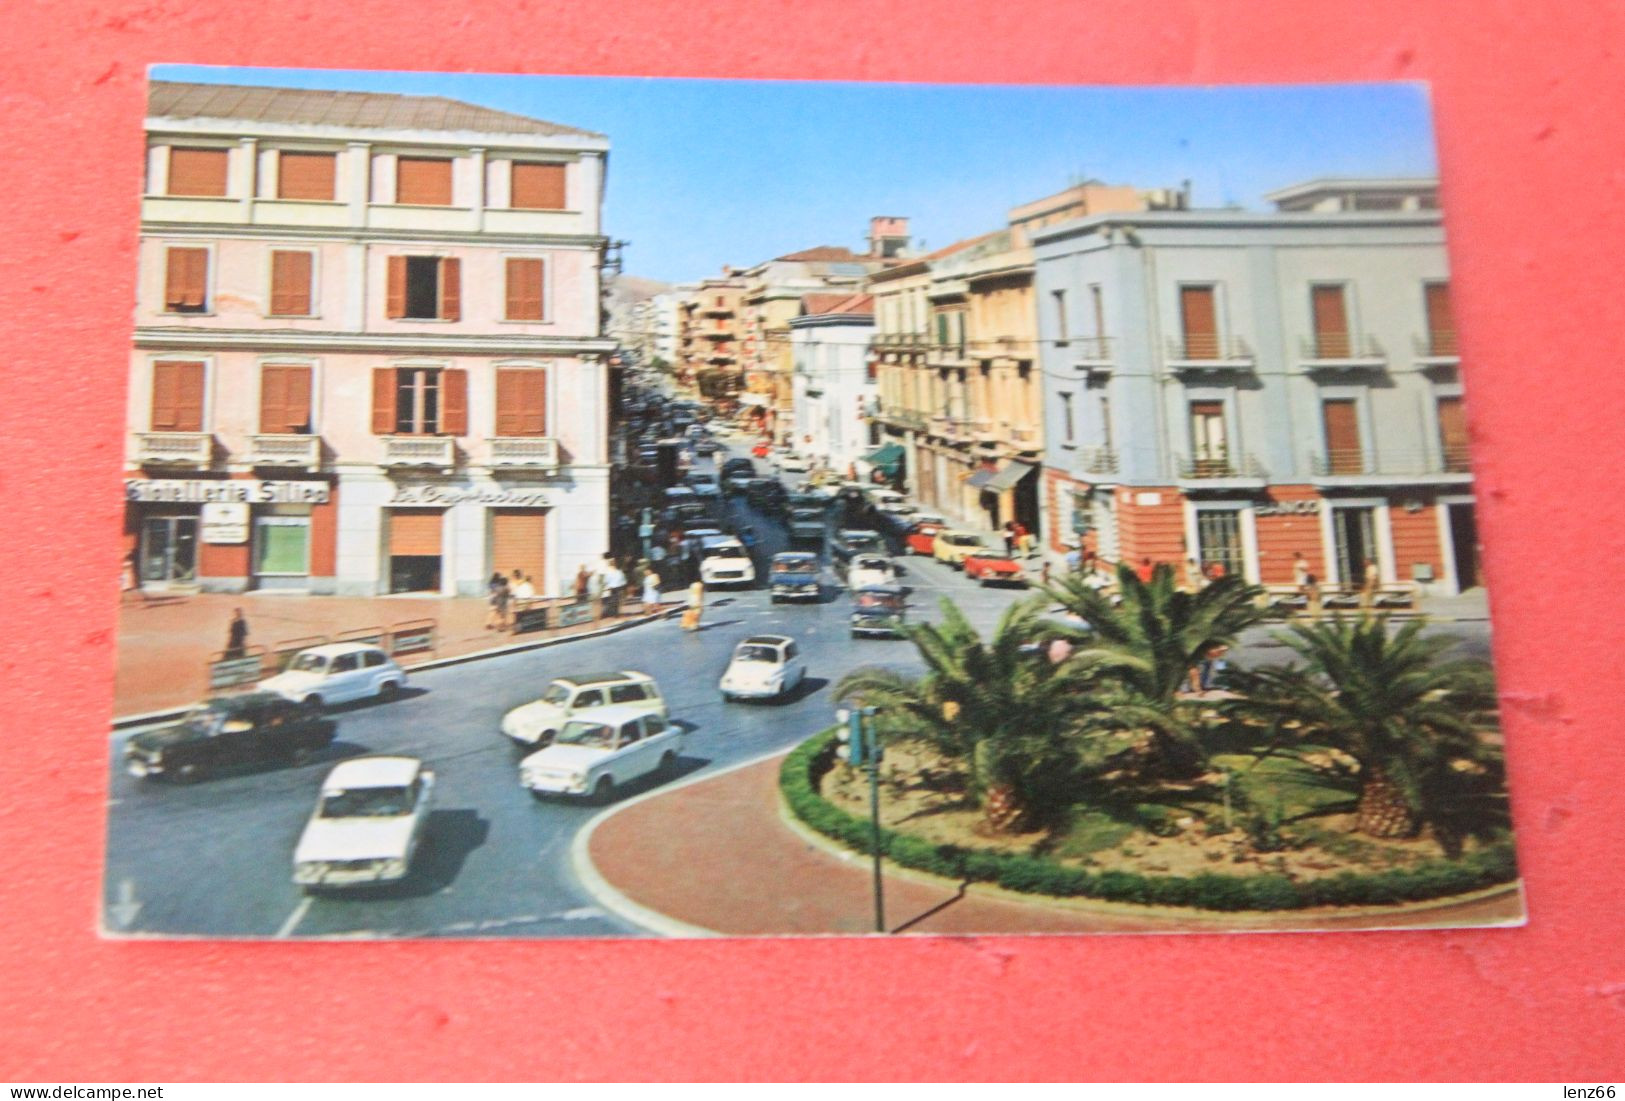 Crotone Piazza Pitagora + Auto Anche Alfa Romeo 1975 - Crotone